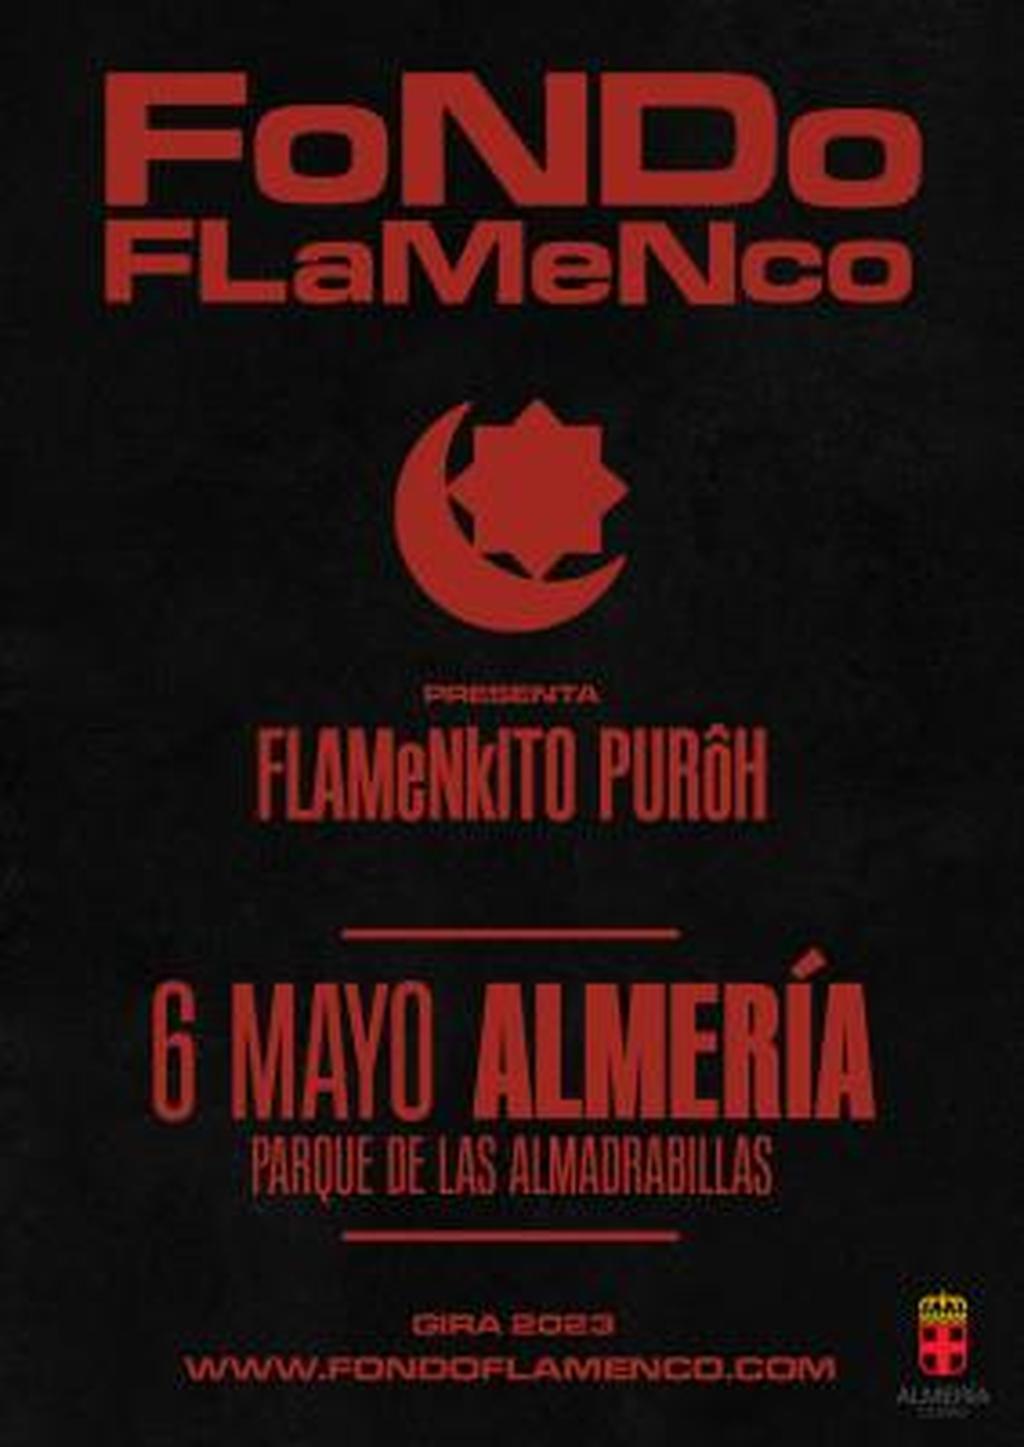 Fondo Flamenco vuelve a los escenarios con un concierto en Almería